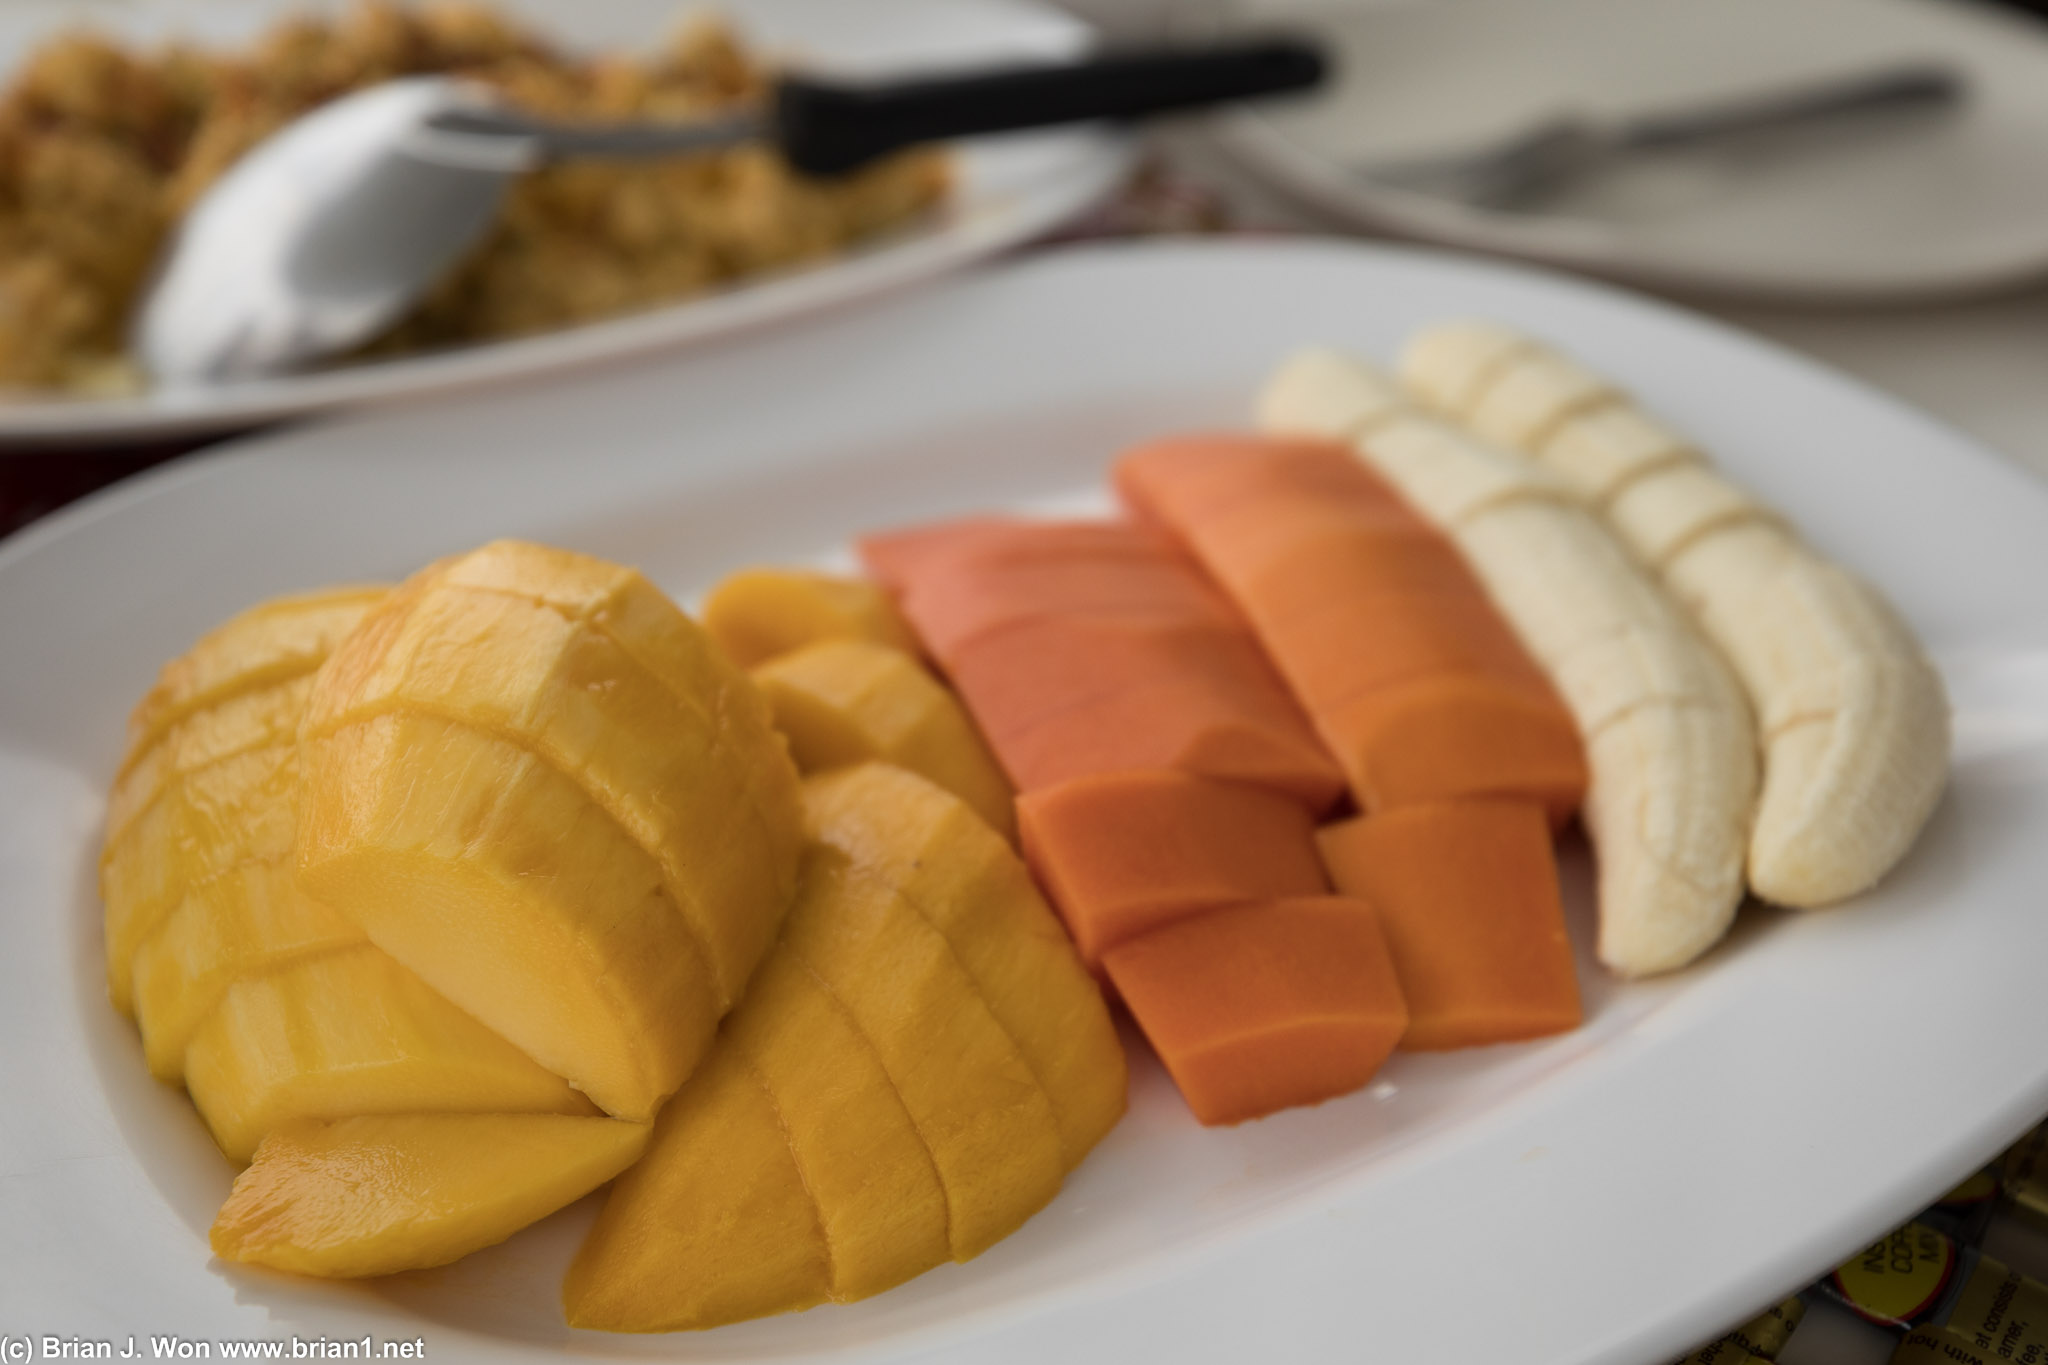 Mango, papaya, and banana for breakfast!